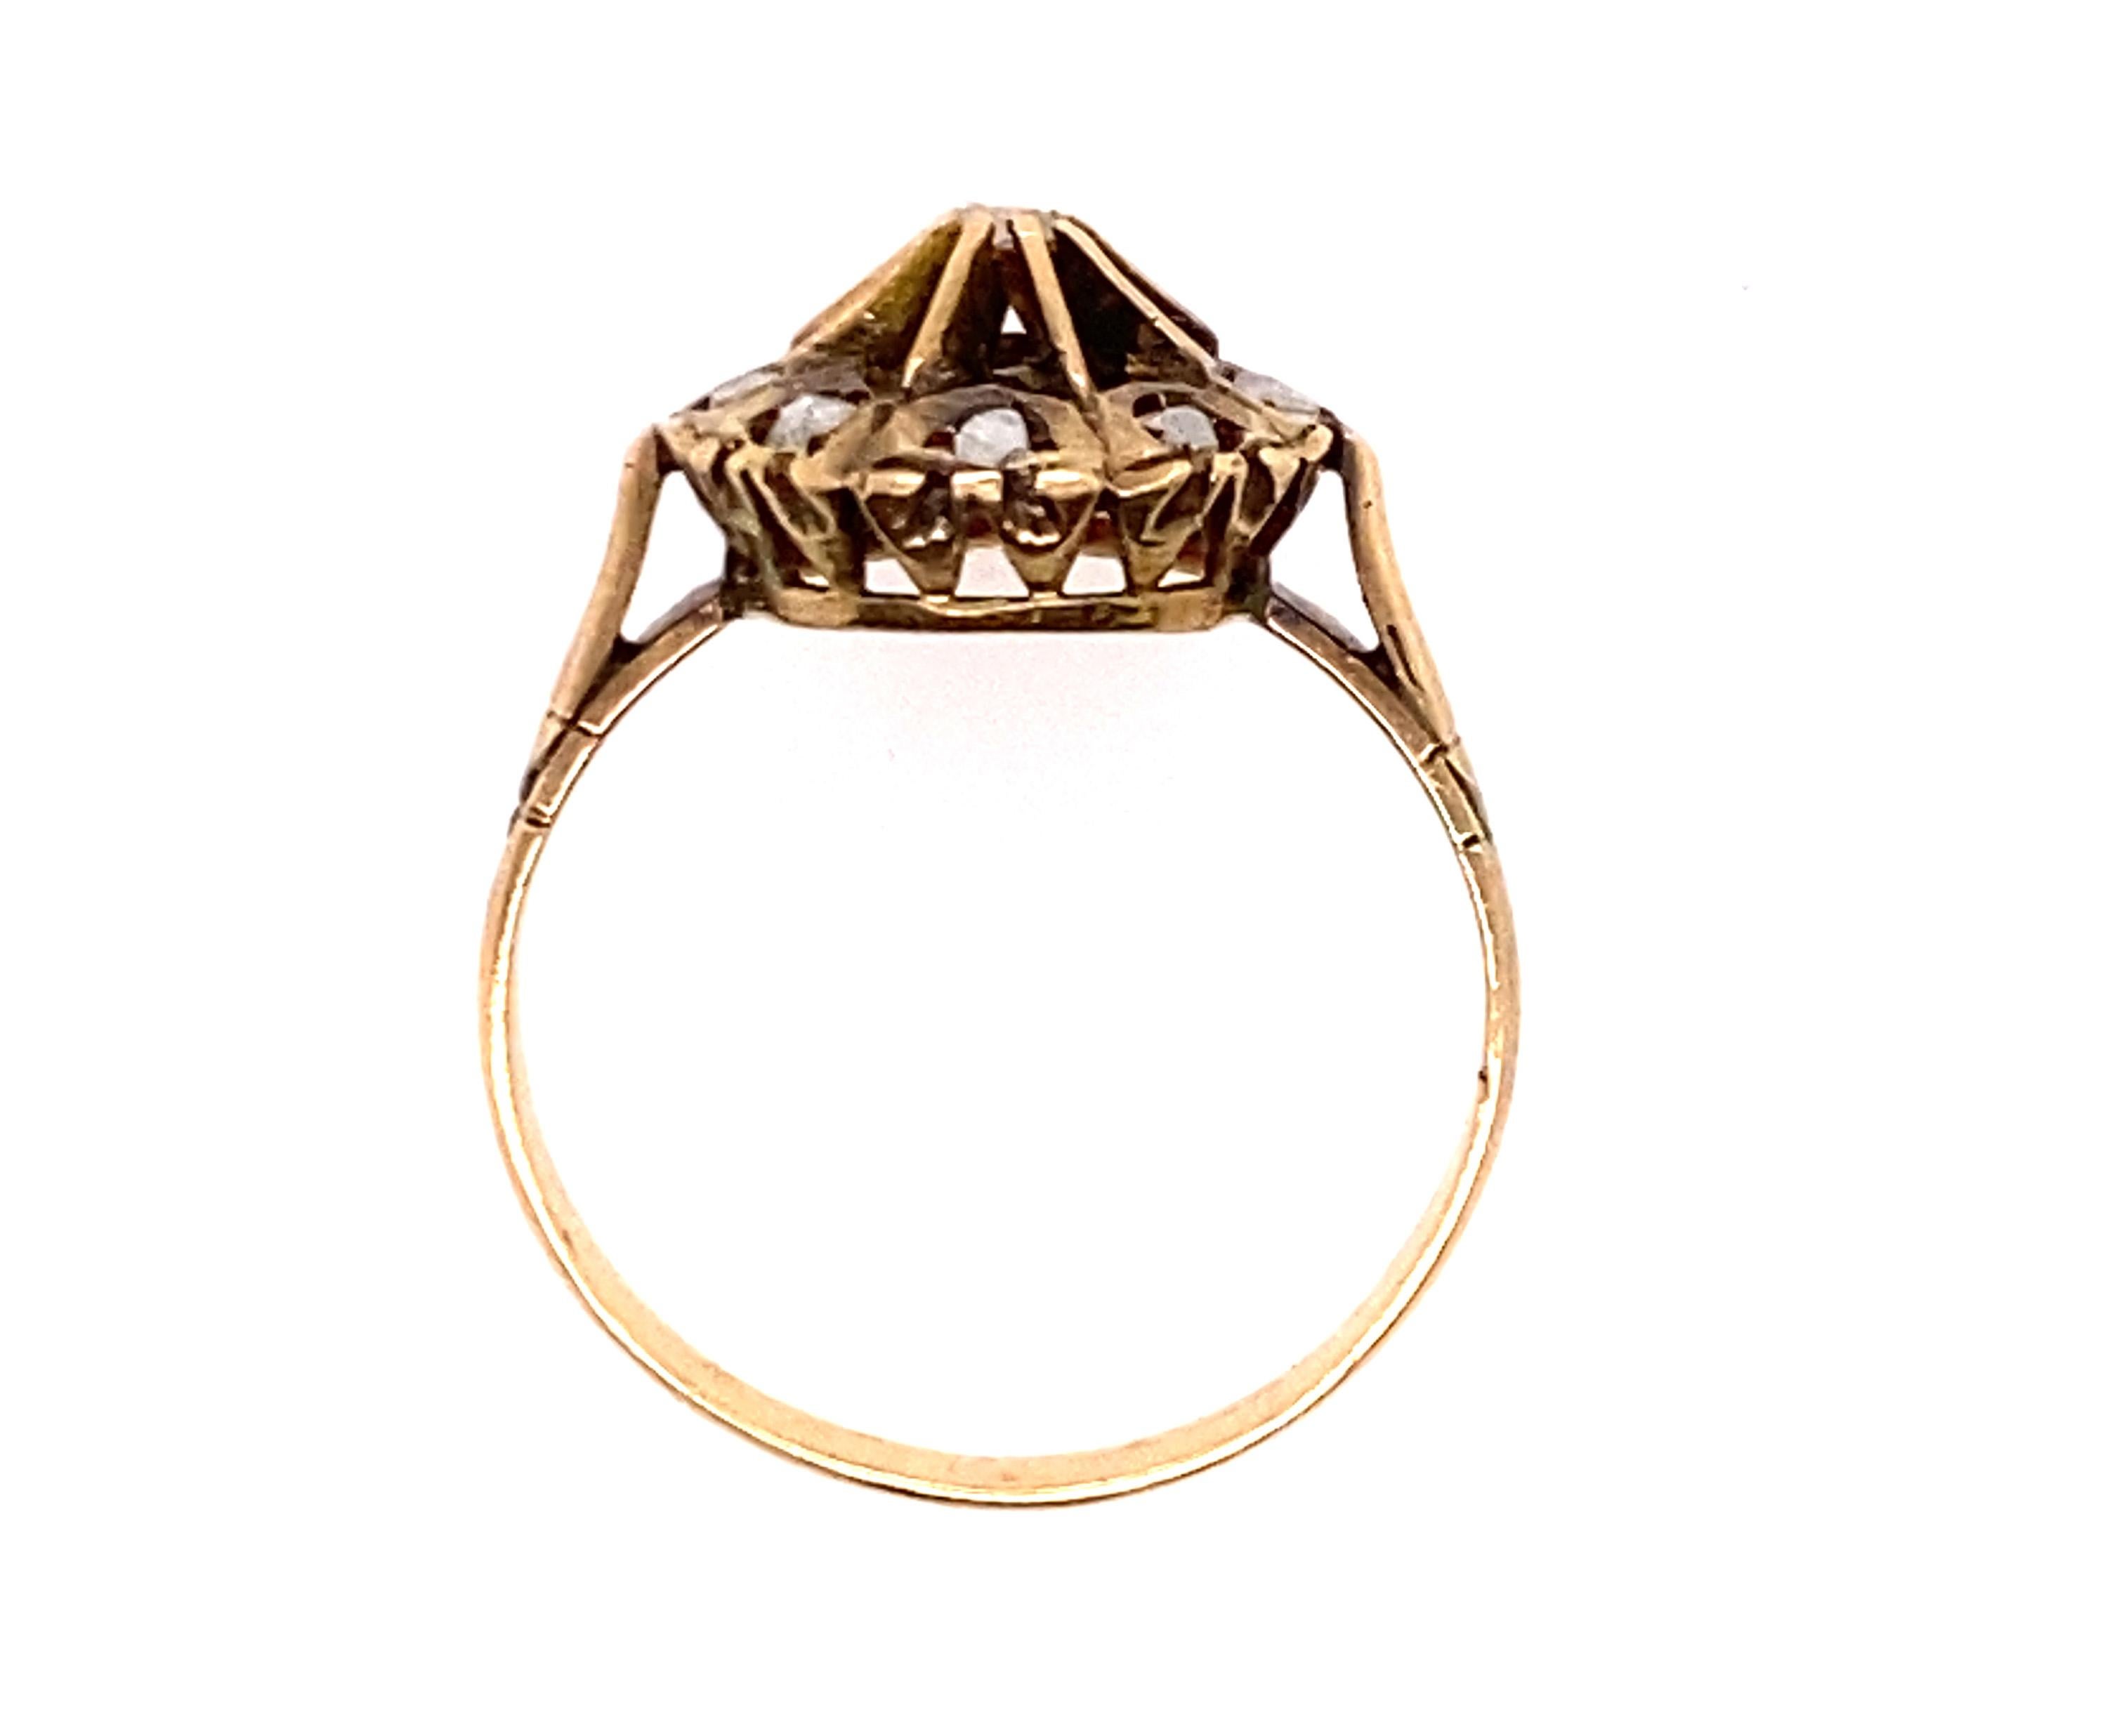 Echtes Original 1800-1830 georgischen antiken Diamantring .40ct Rose Cut 14K Gelbgold

 

Echte Diamanten im Rosenschliff, natürlich abgebaut

Echter antiker Ring wurde vor fast 200 Jahren von Hand gefertigt

Atemberaubende handgeschnitzte